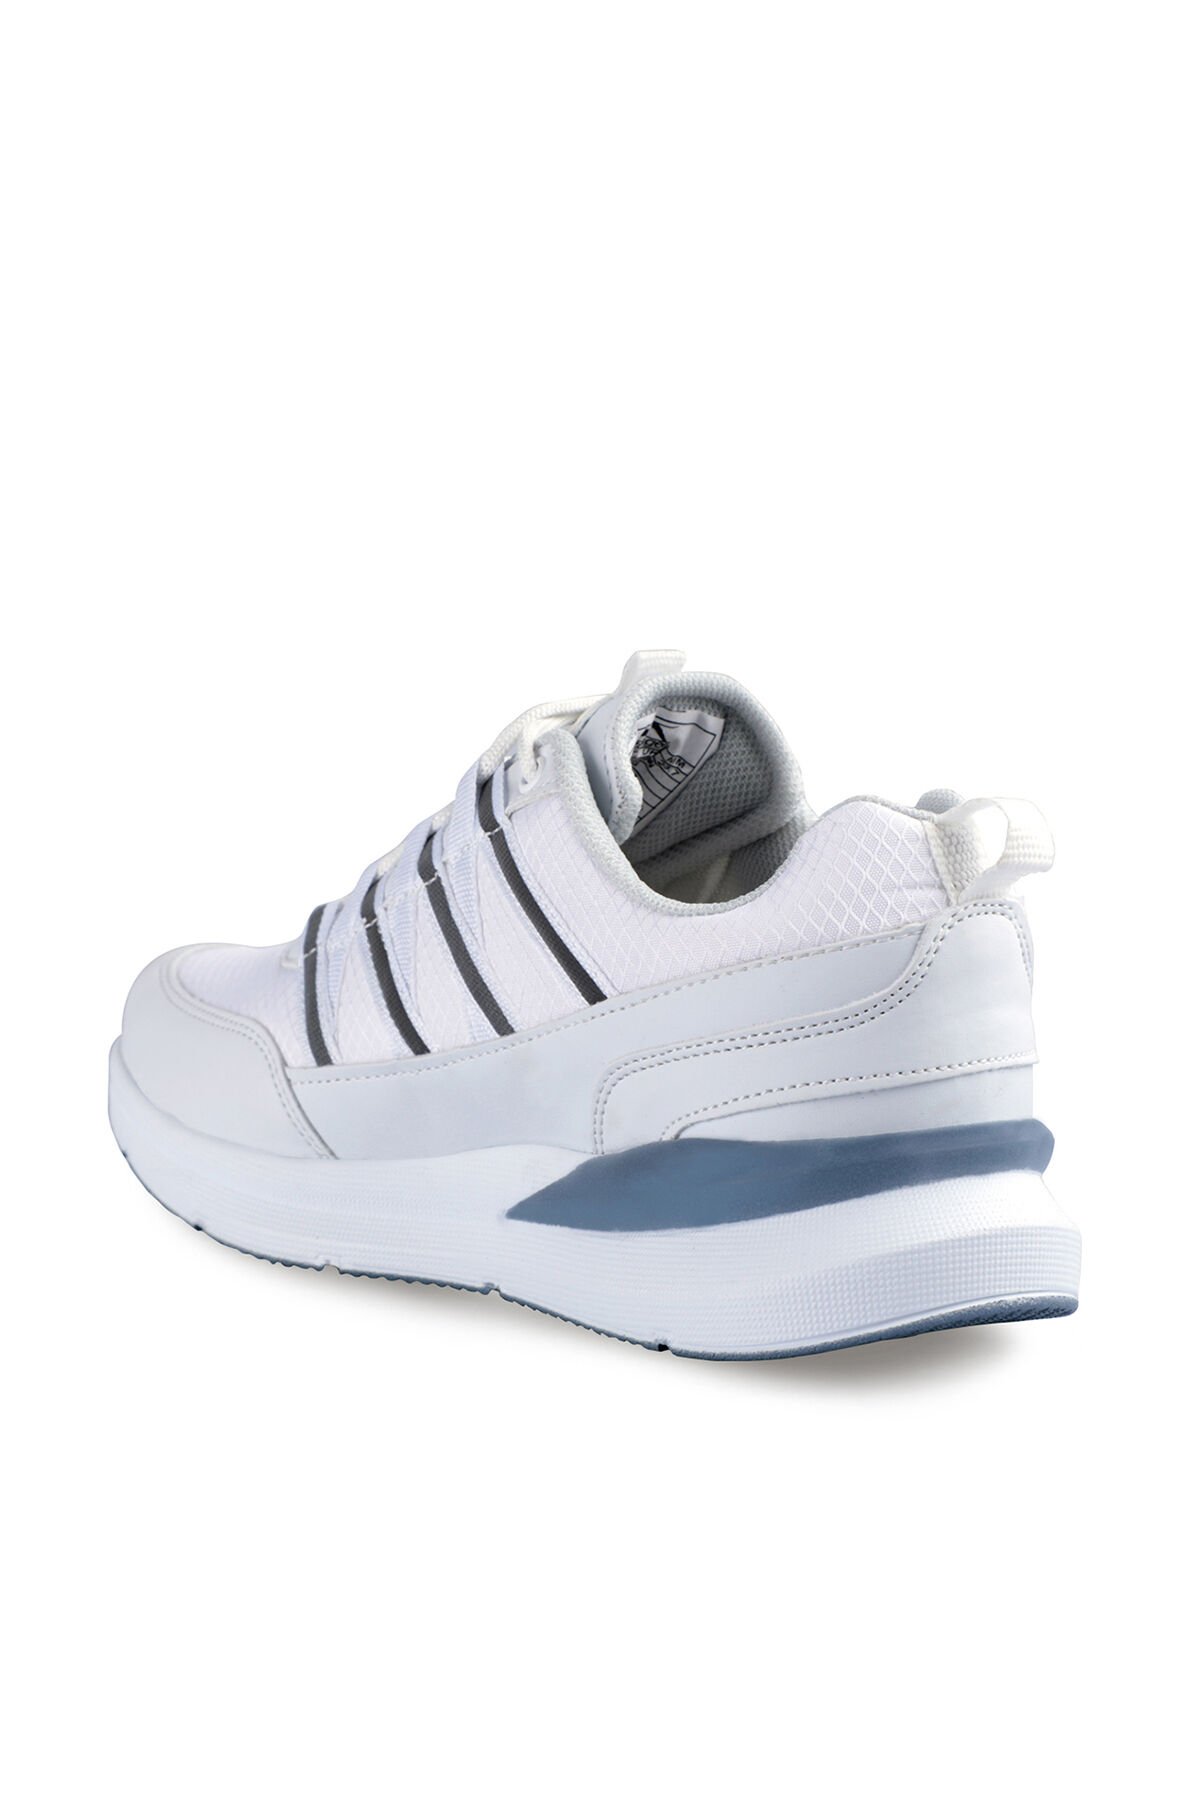 Slazenger TECHNICS I Sneaker Kadın Ayakkabı Beyaz / Beyaz - Thumbnail